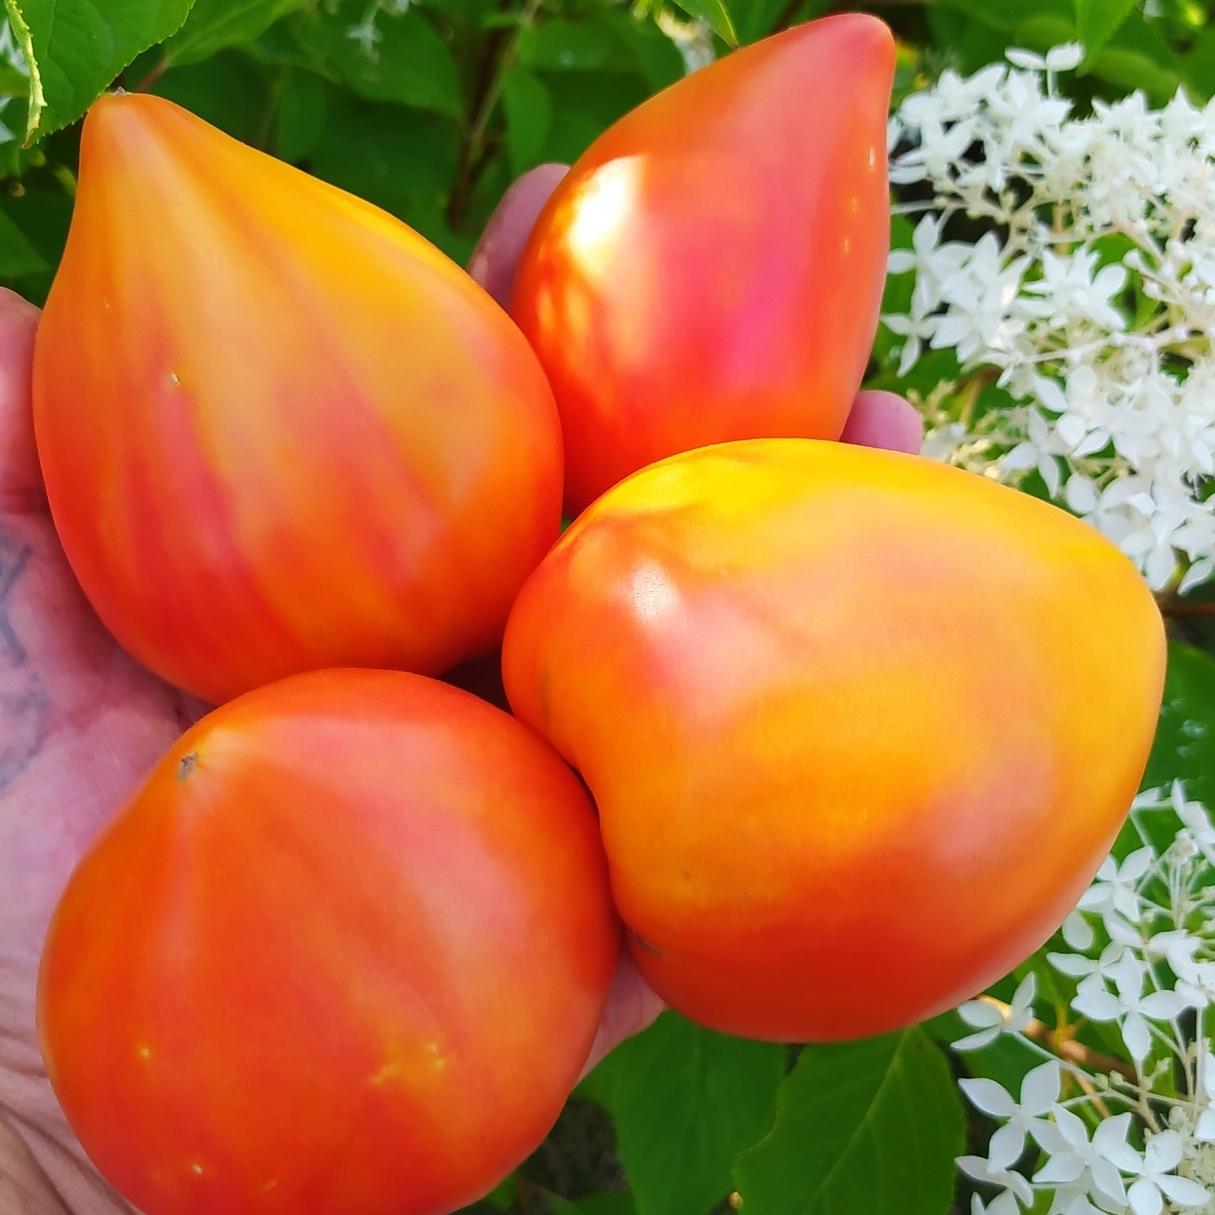 золотые горы медео томат описание сорта